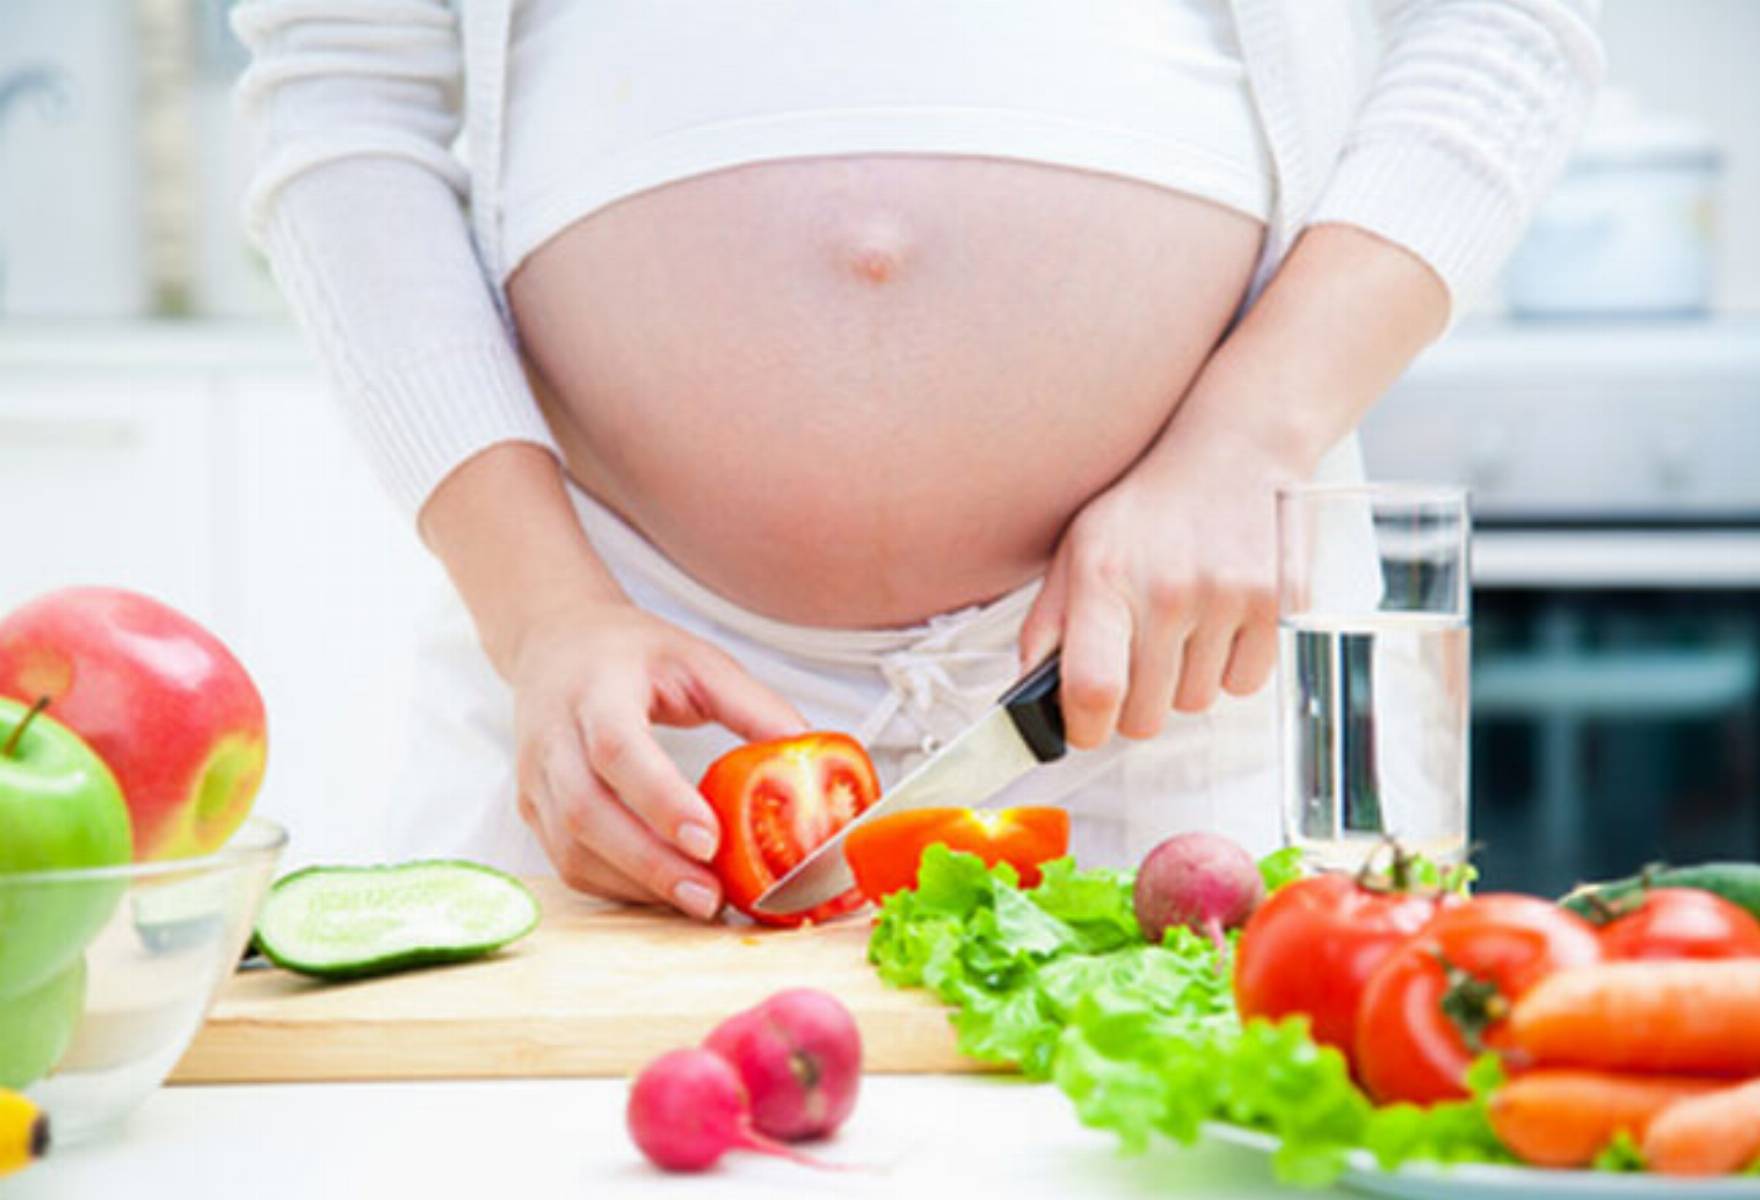 Co jeść w ciąży i podczas karmienia piersią? Doskonała okazja, by zmienić nawyki żywieniowe